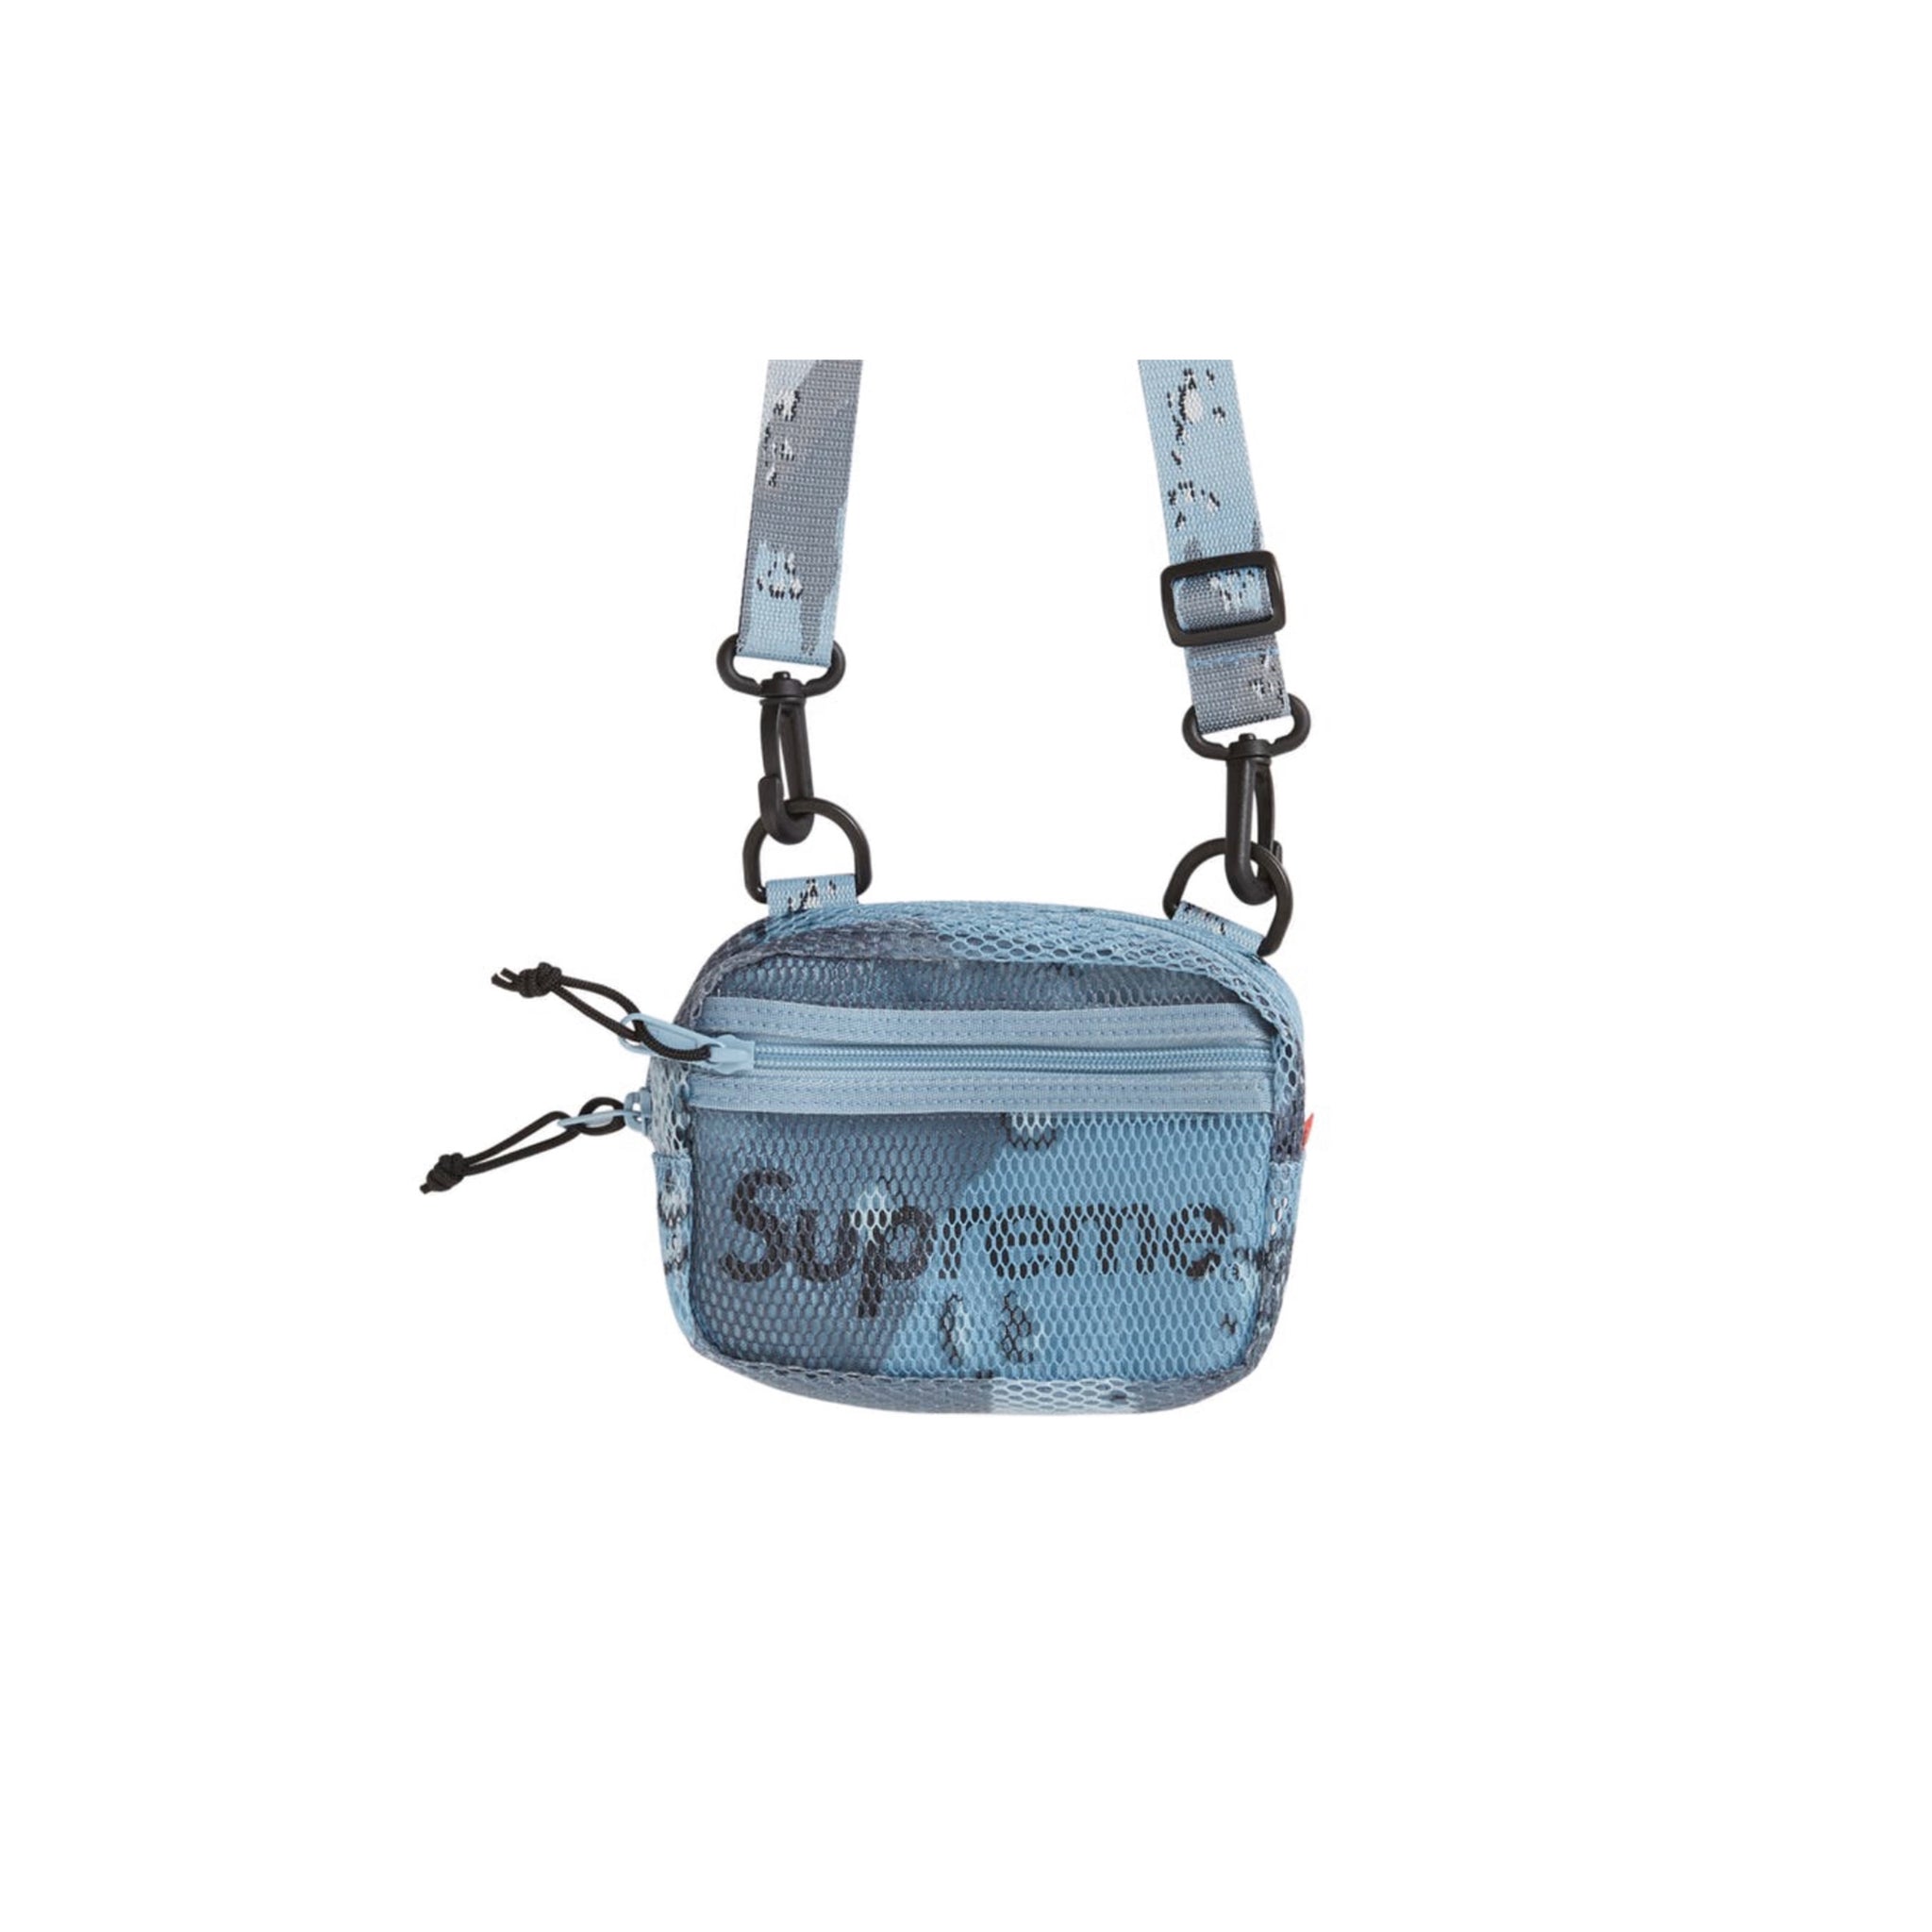 Shop Supreme Belt Bag Ss20 online